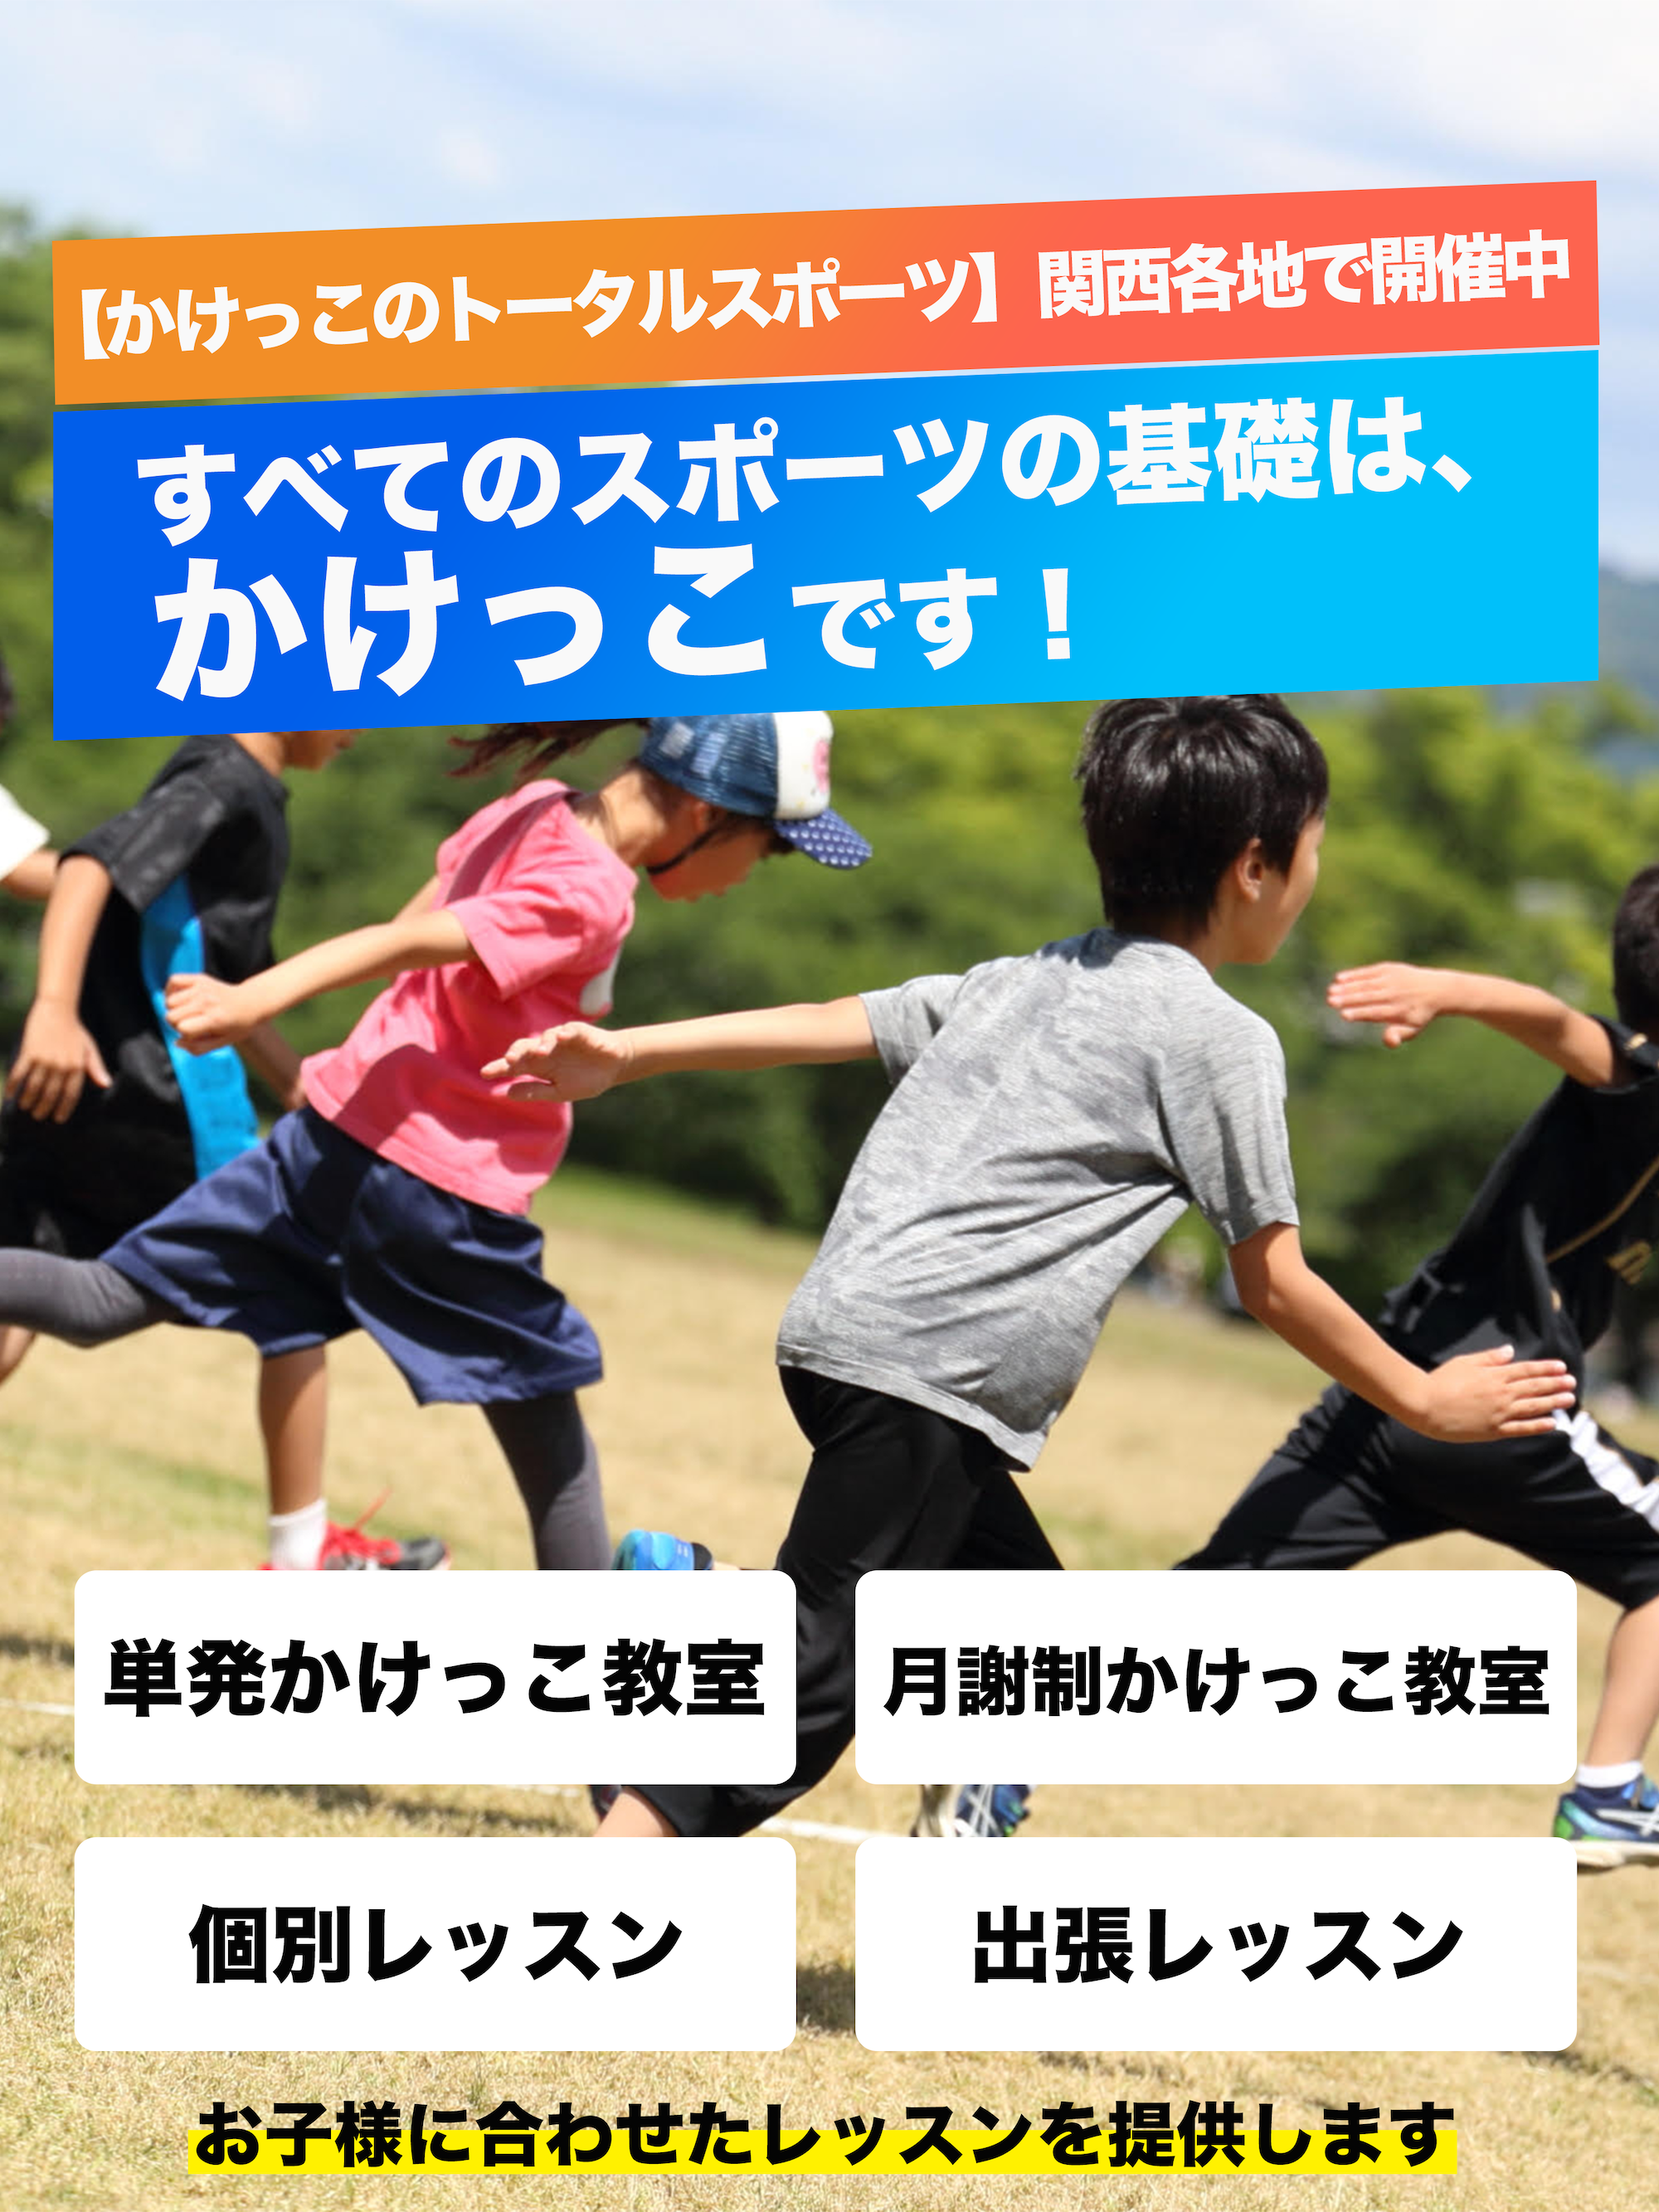 走り方 かけっこ教室 関西 大阪 神戸 京都 奈良 和歌山 トータルスポーツ 走り方を改善したい もっと速くなりたい方